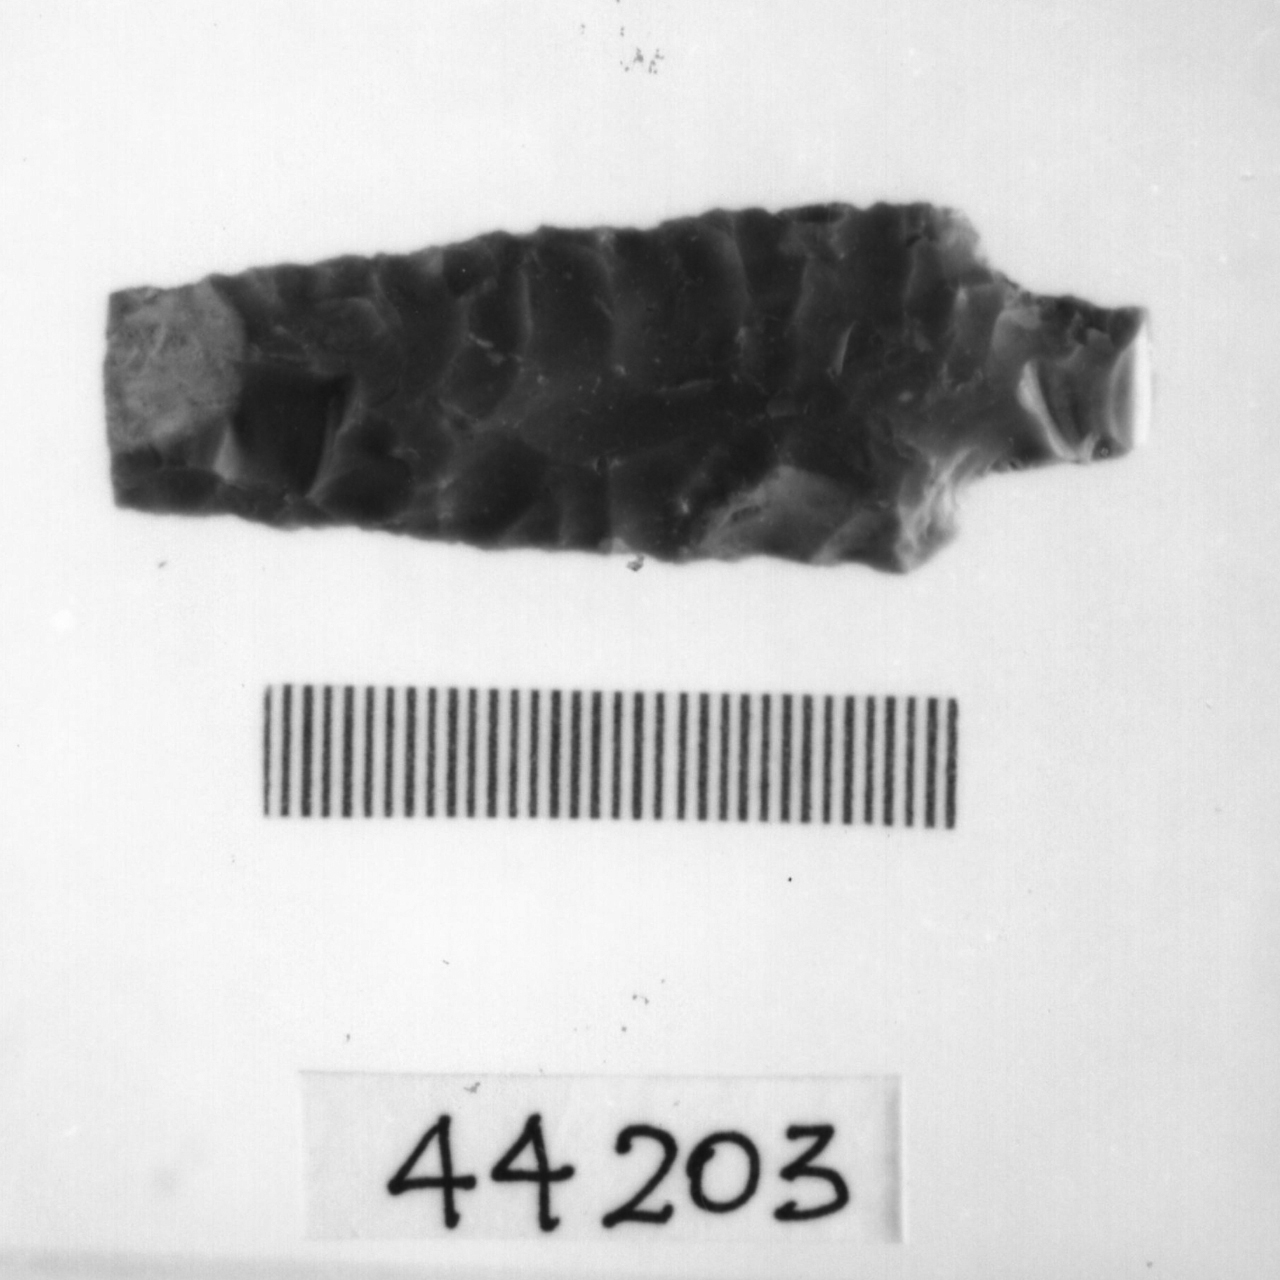 punta foliata a doppio cran (Eneolitico)